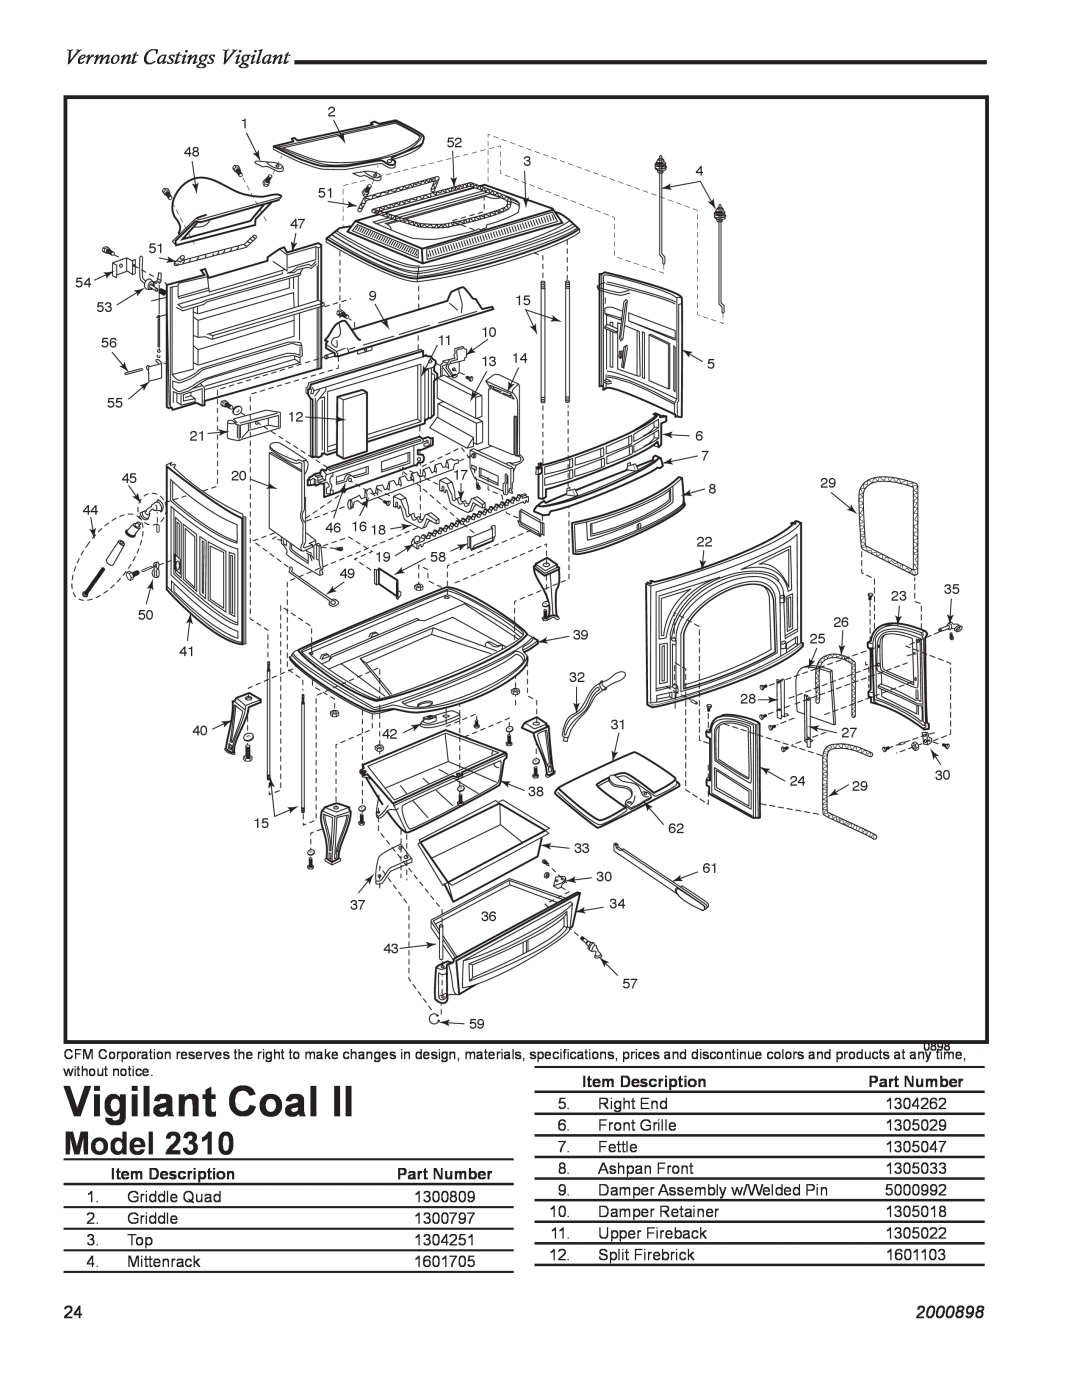 Vermont Casting 2310 Vigilant Coal, Model, Vermont Castings Vigilant, 2000898, Item Description, Part Number 